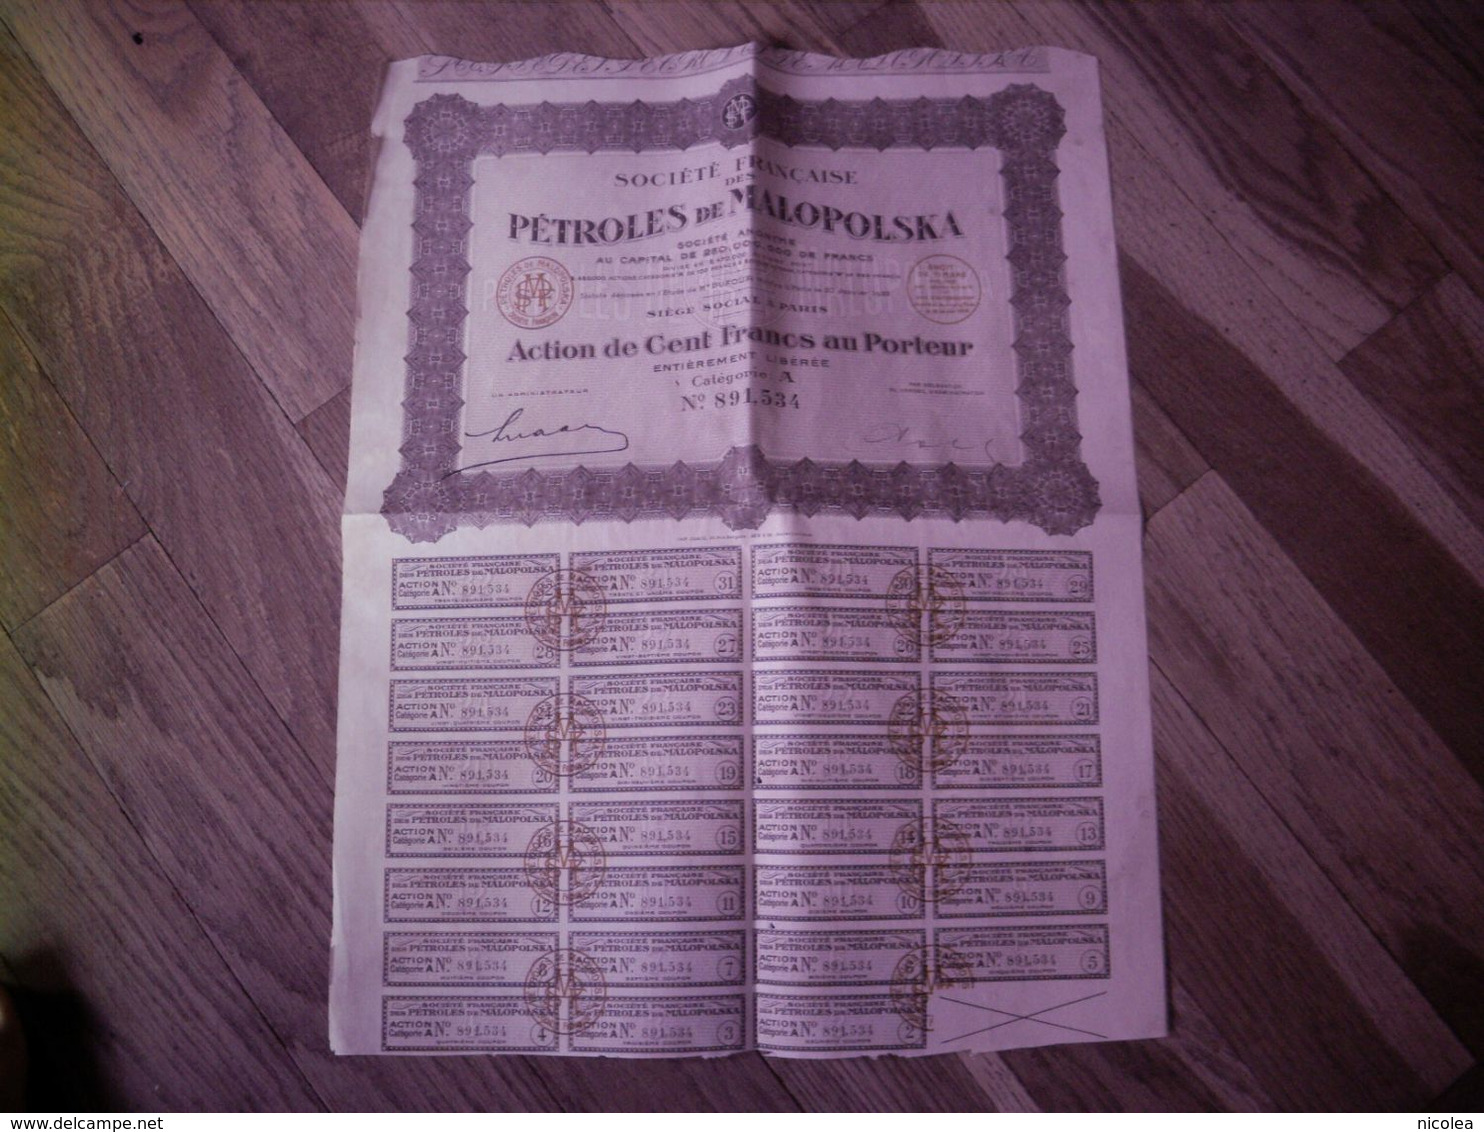 Société Française Des Pétroles De Malopolska - 1922 - Action De Cent Francs Au Porteur Entièrement Libérée - Petróleo